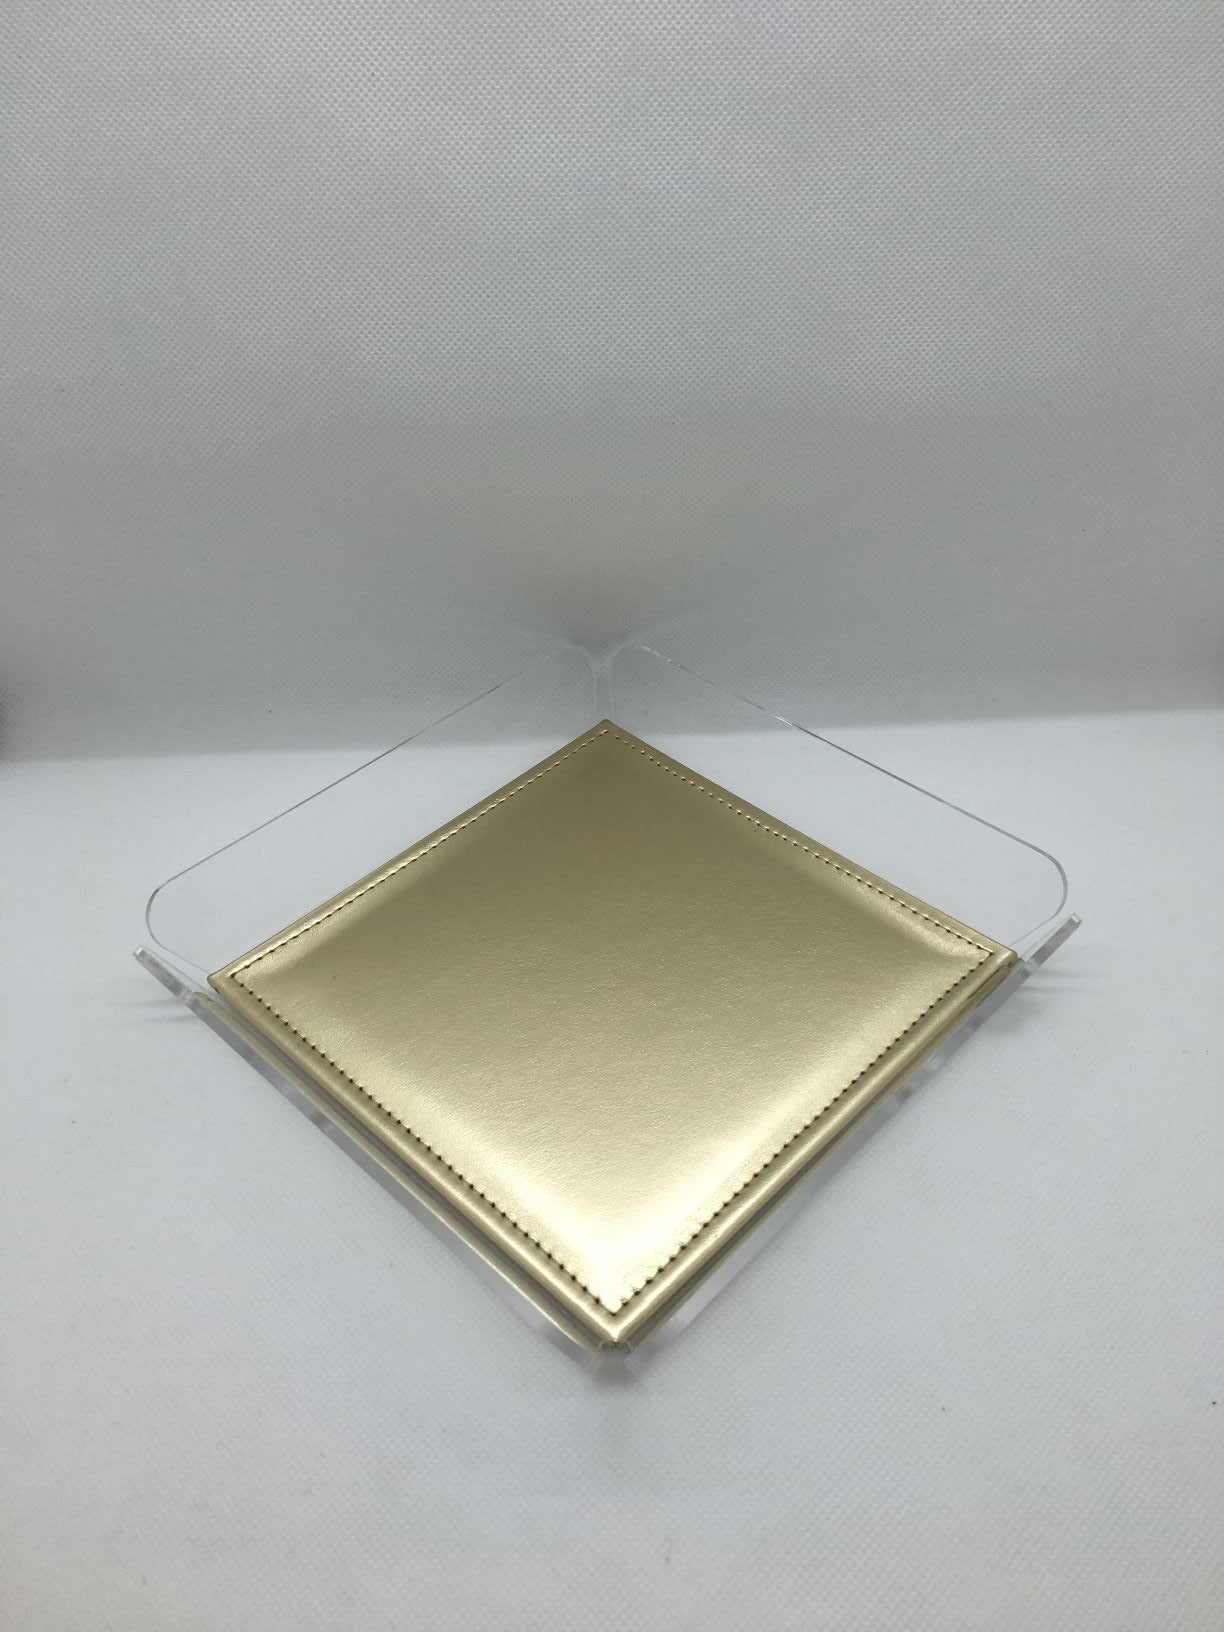 ANYTHING Vuotatasche in cristallo acrilico trasparente con cuscinetto oro. Dimensioni cm 18x18x3 h. Spessore PMMA mm 3. In negozio e online su tuttochic.it